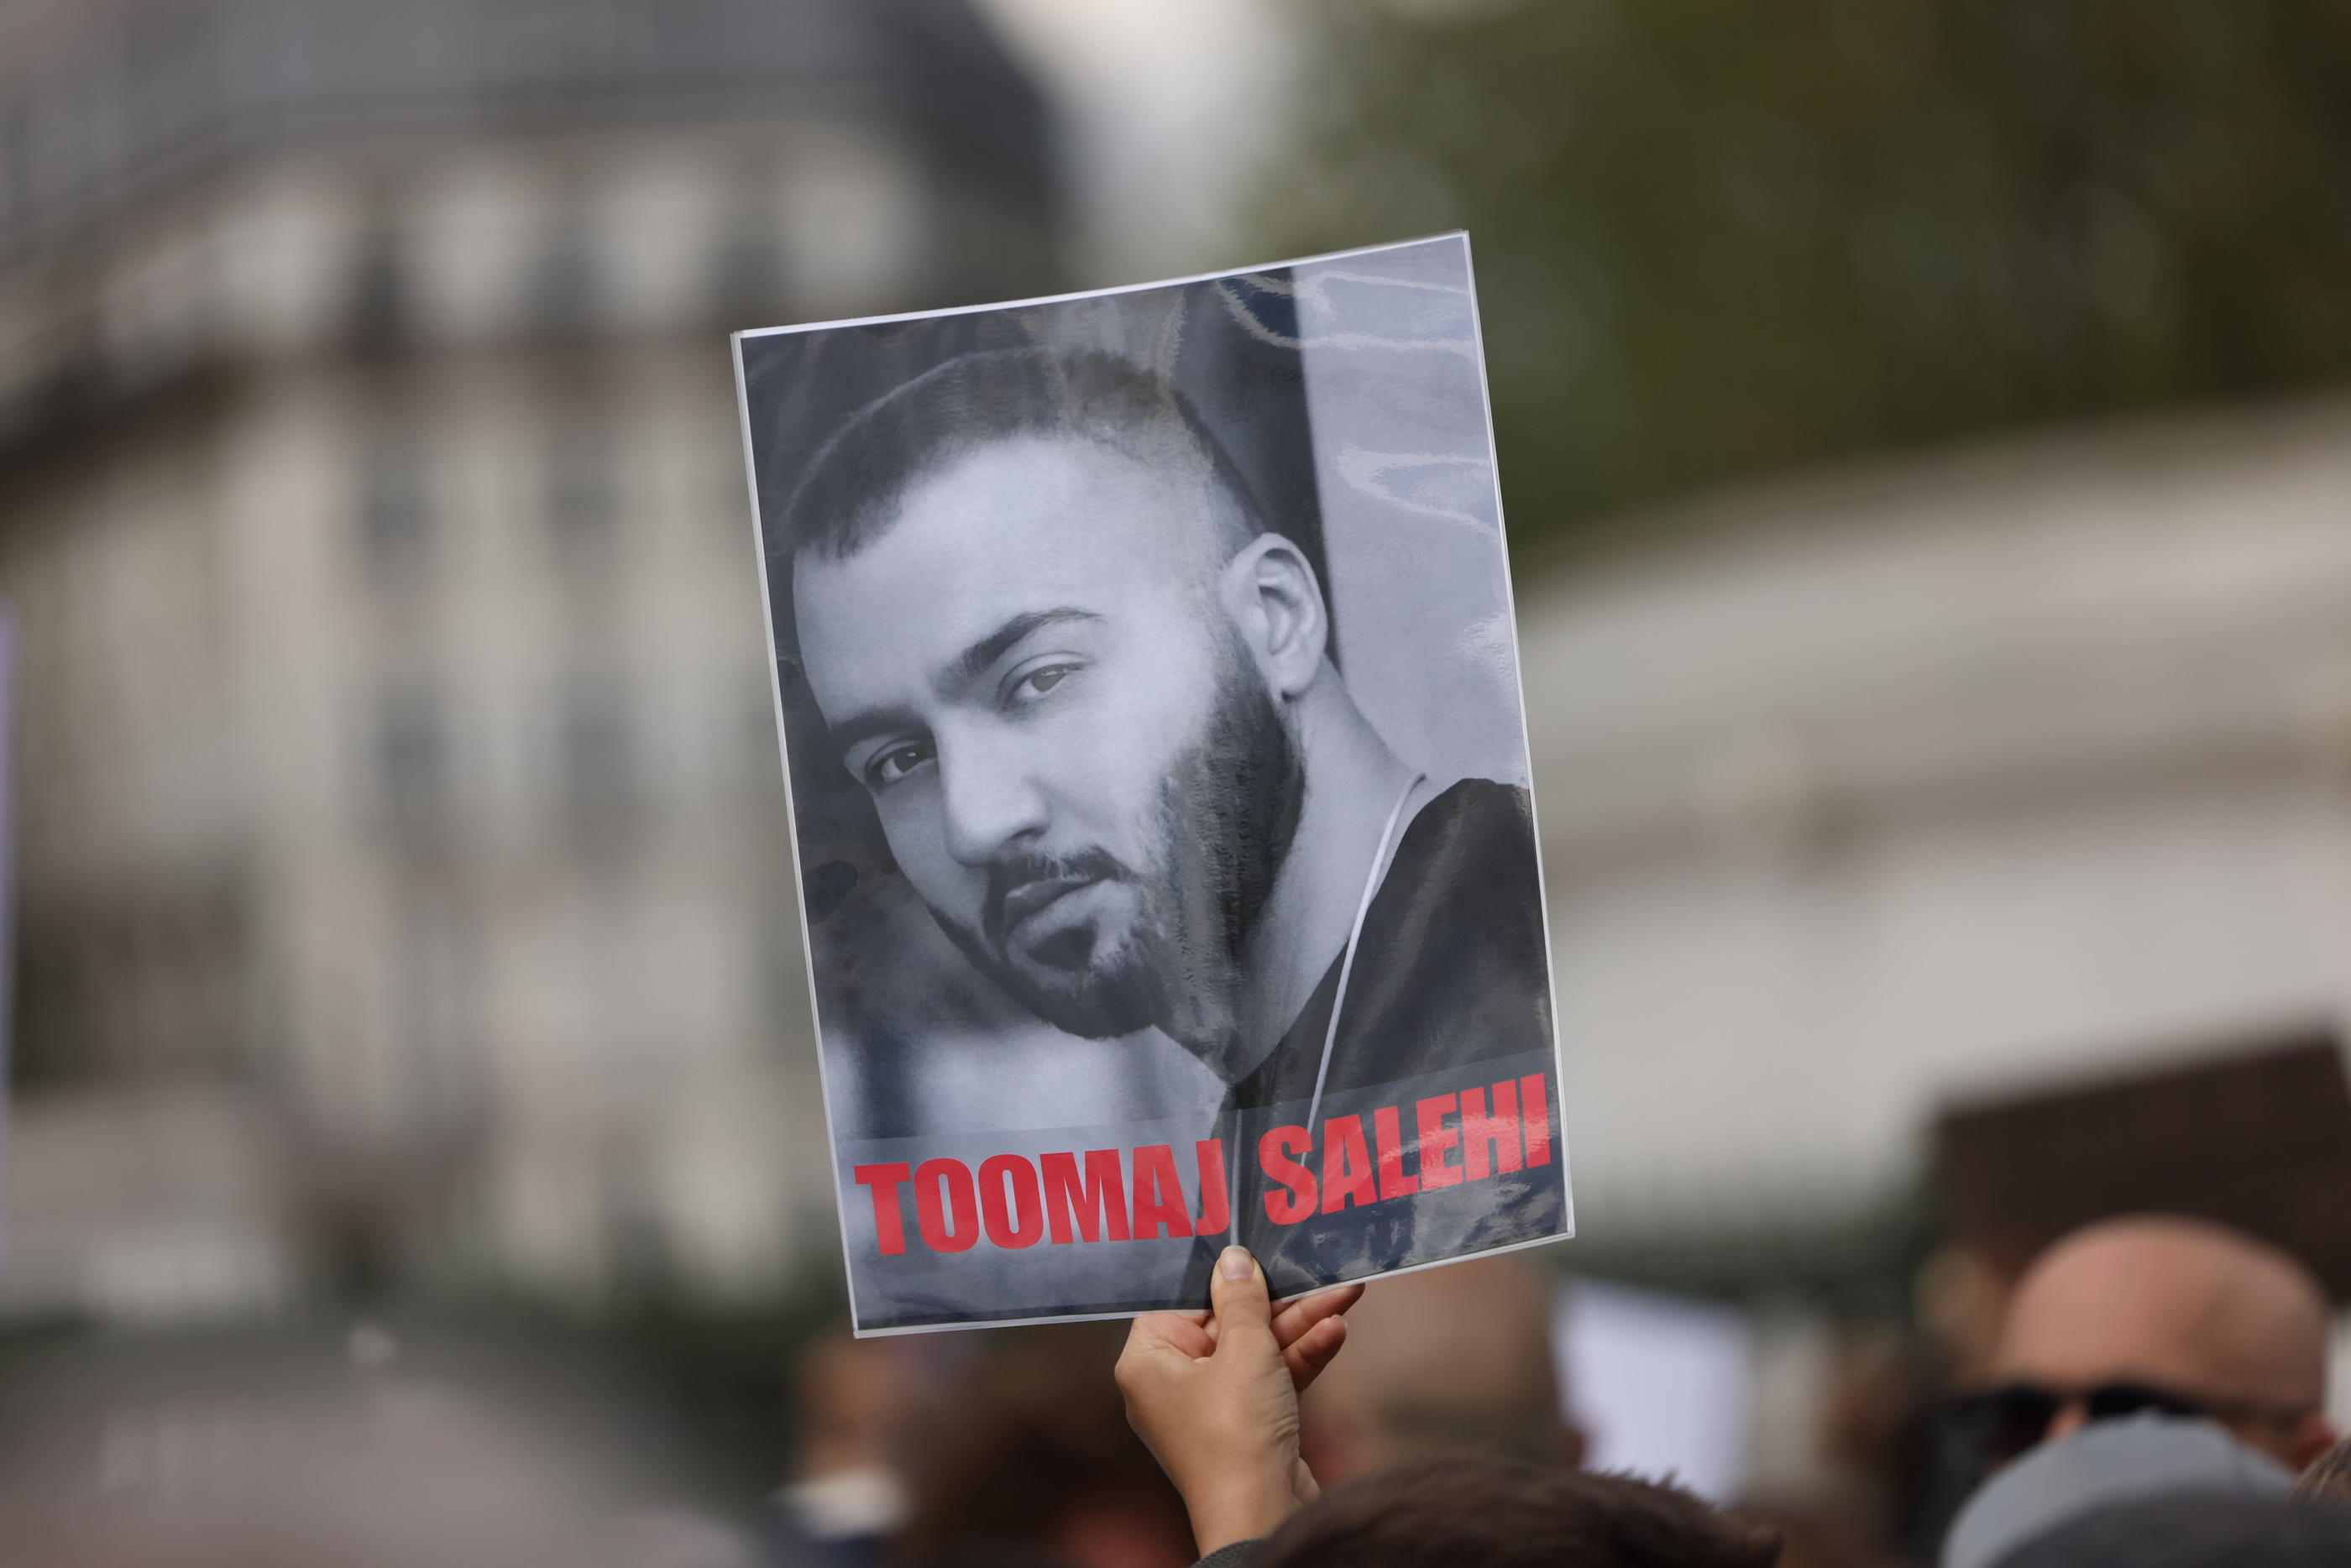 Une manifestation en soutien au rappeur iranien Toomaj Salehi s'est déroulée place de la Bastille à Paris. LP/Arnaud Journois